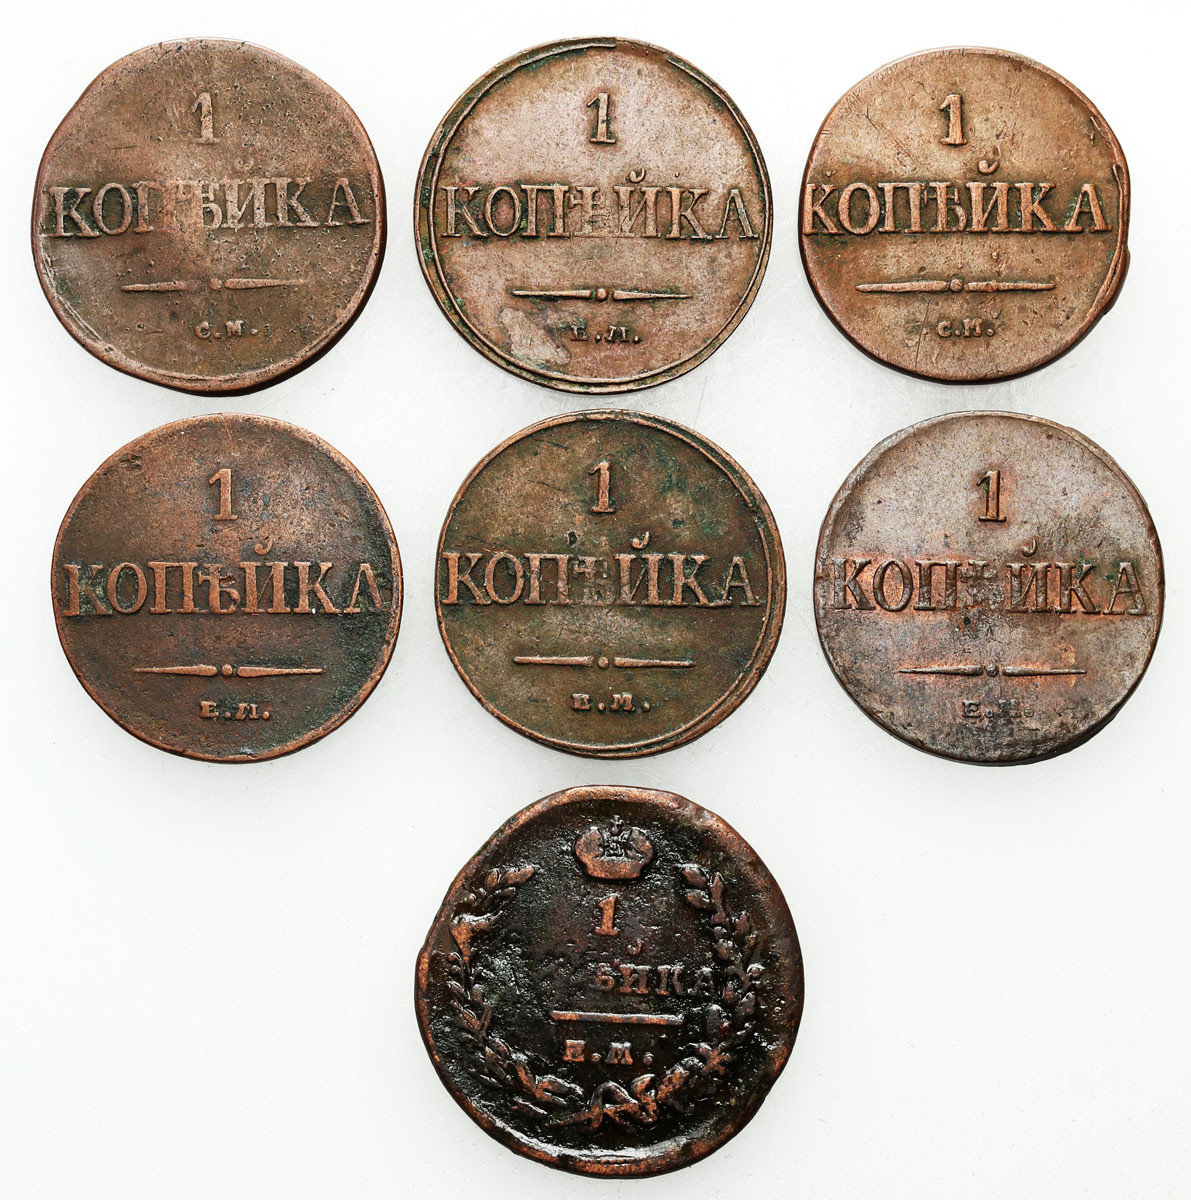 Rosja, Aleksander I, Mikołaj I. kopiejka 1832-1835, zestaw 7 monet